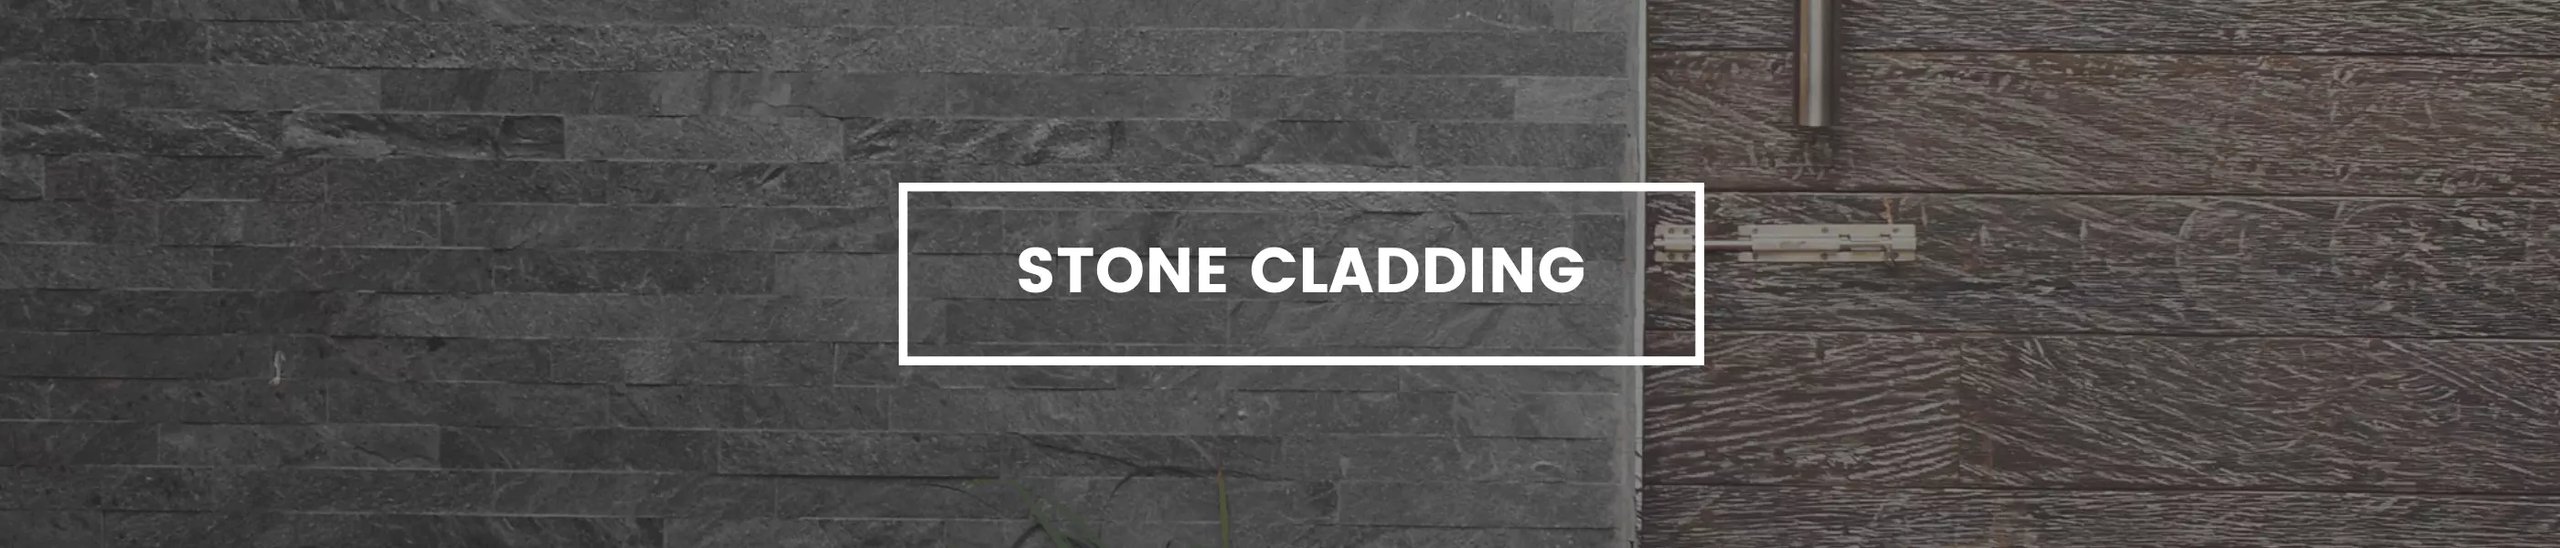 Stone Cladding hero banner for desktop.